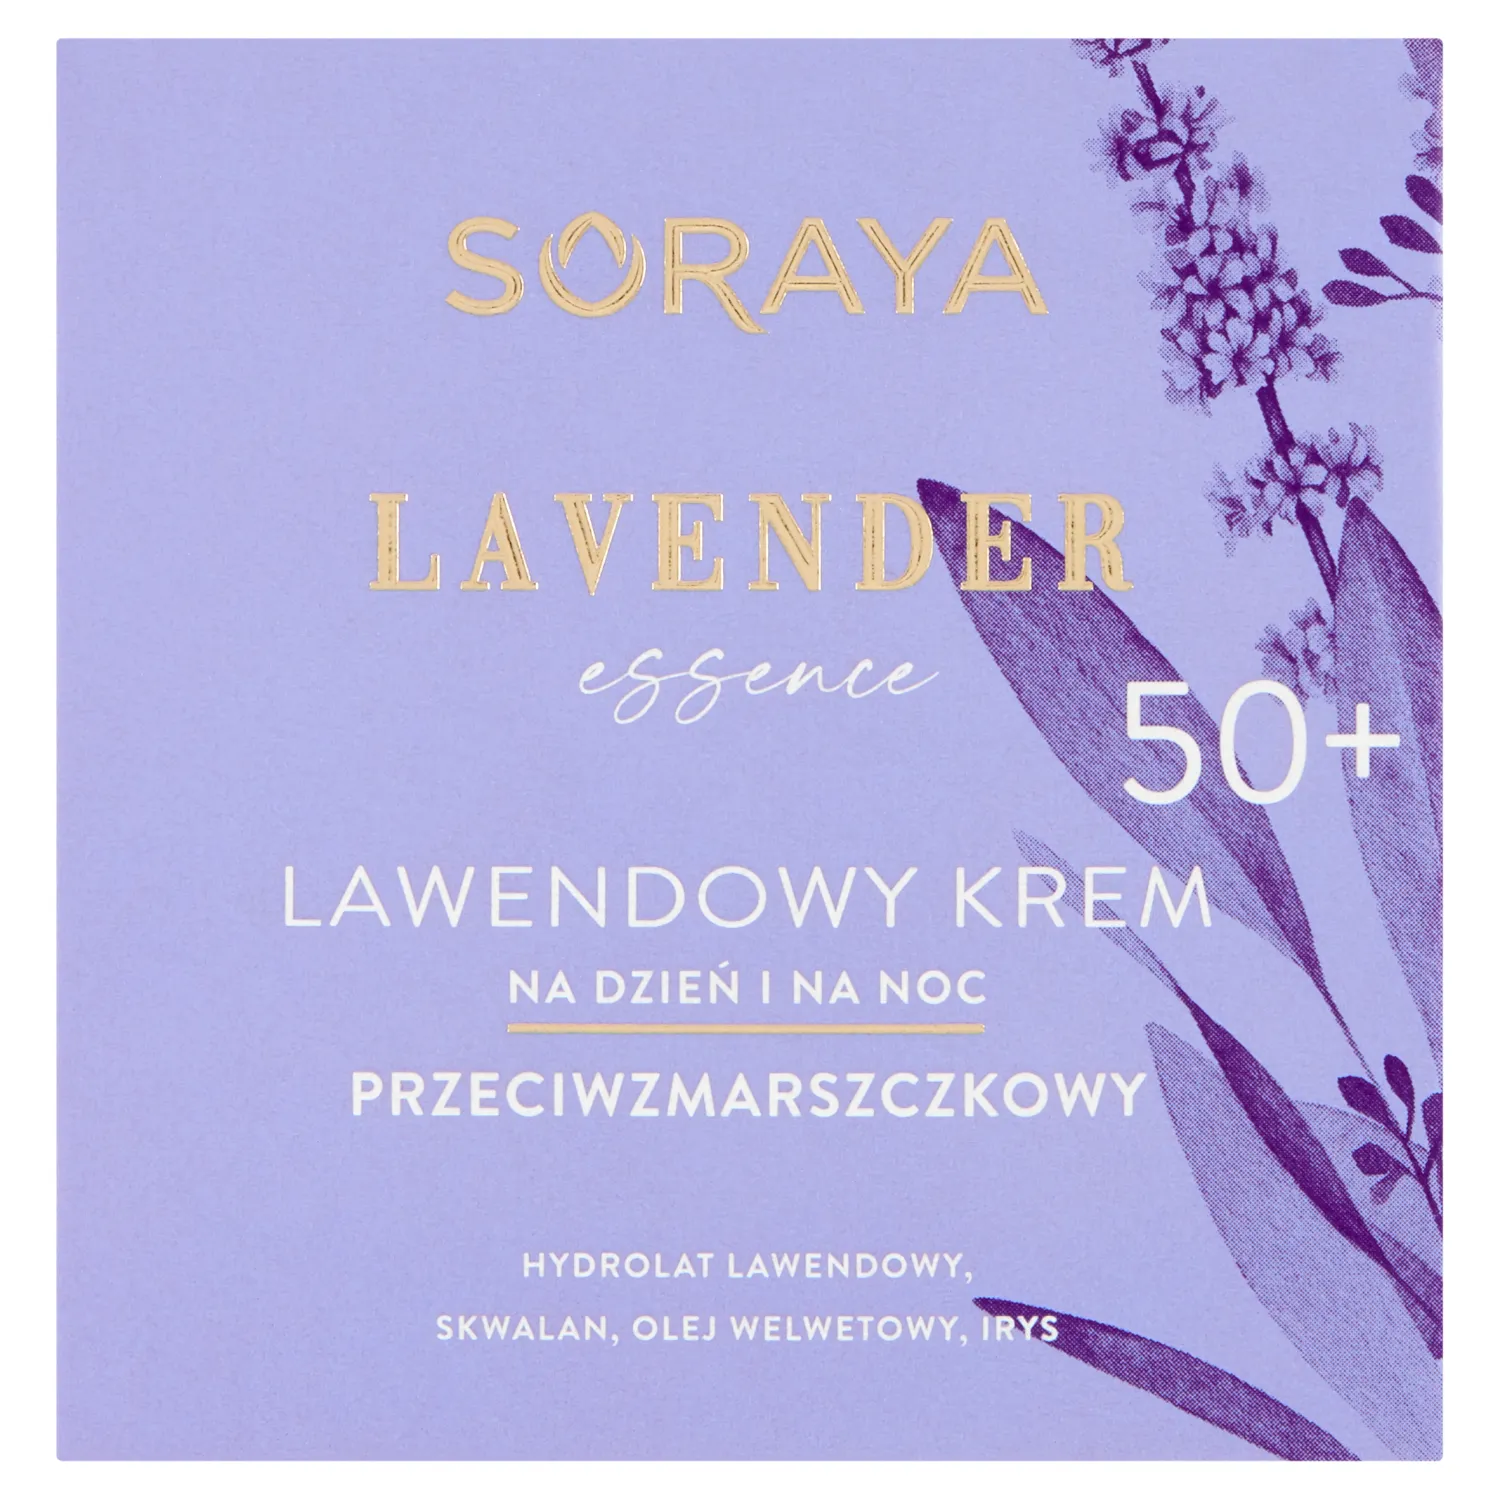 Soraya Lavender Essence lawendowy krem przeciwzmarszczkowy na dzień i na noc 50+, 50 ml